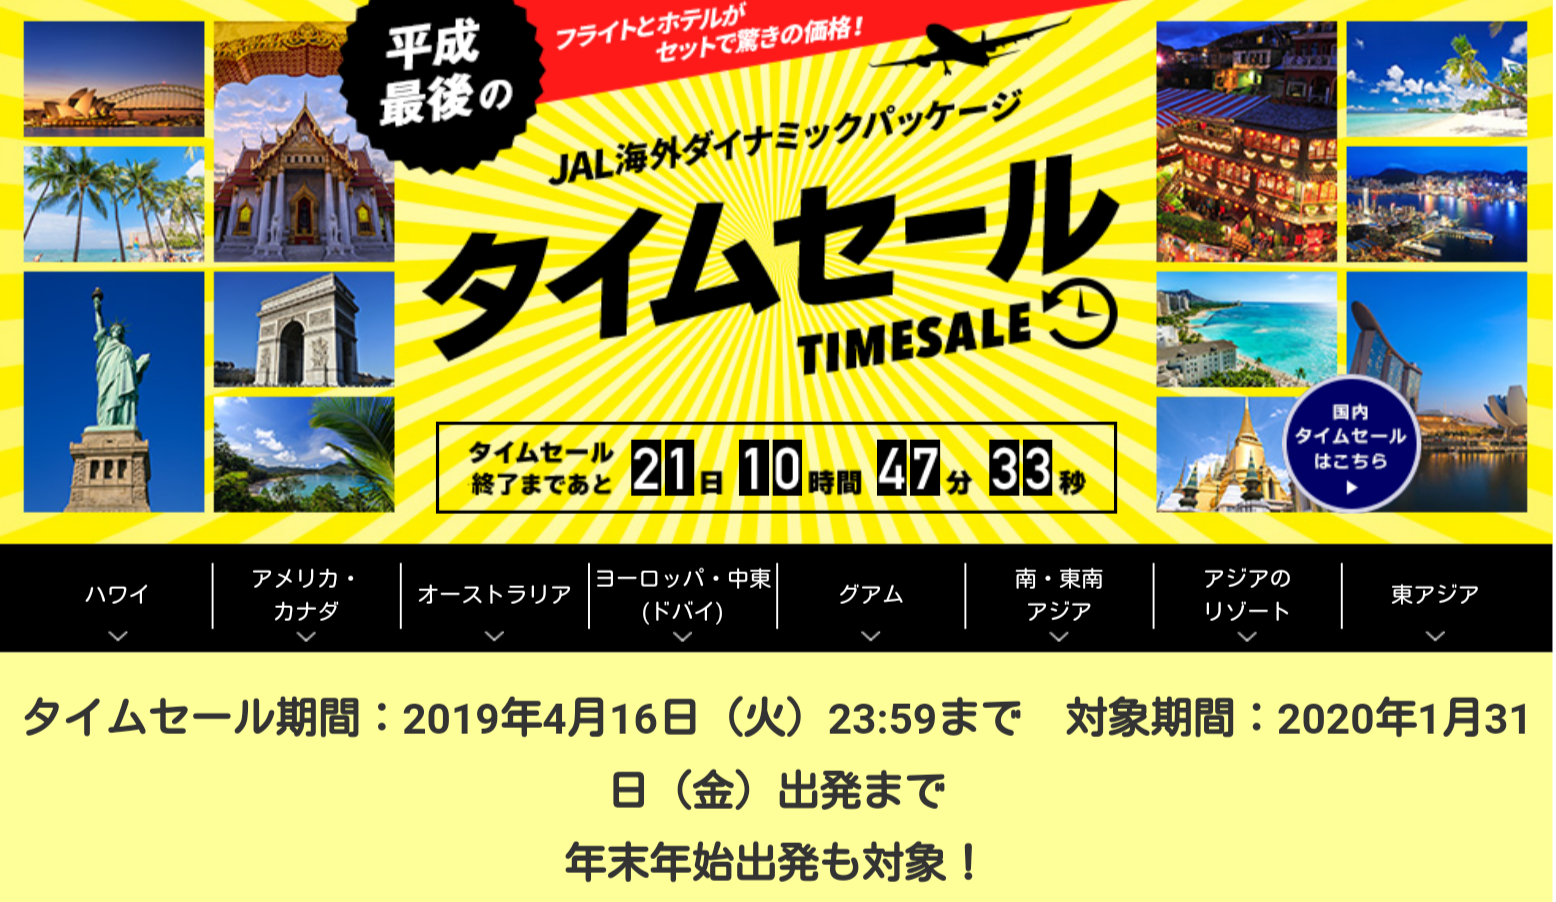 【JAL】ダイナミックパッケージ平成最後のタイムセール（マニラ総額4万円など）|Yutaka's blog